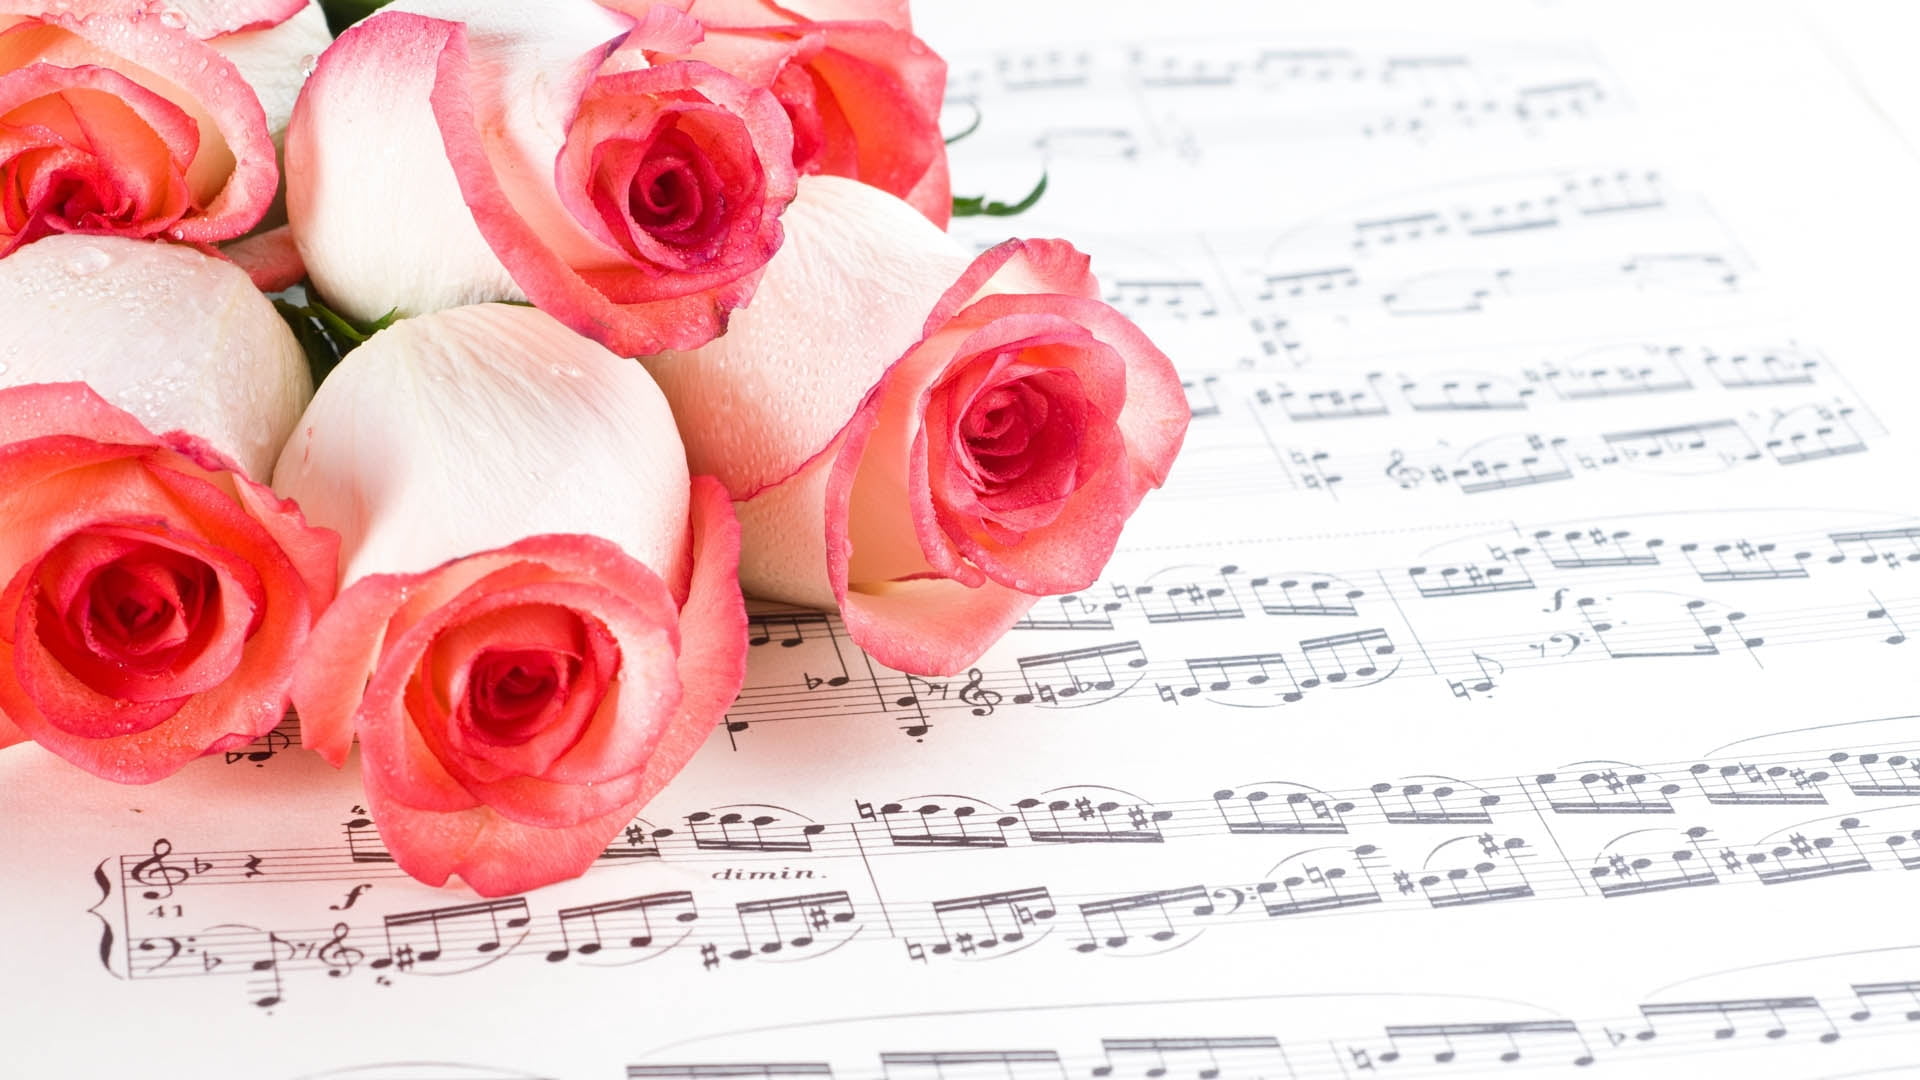 roses-music-flowers-white-wallpaper.jpg